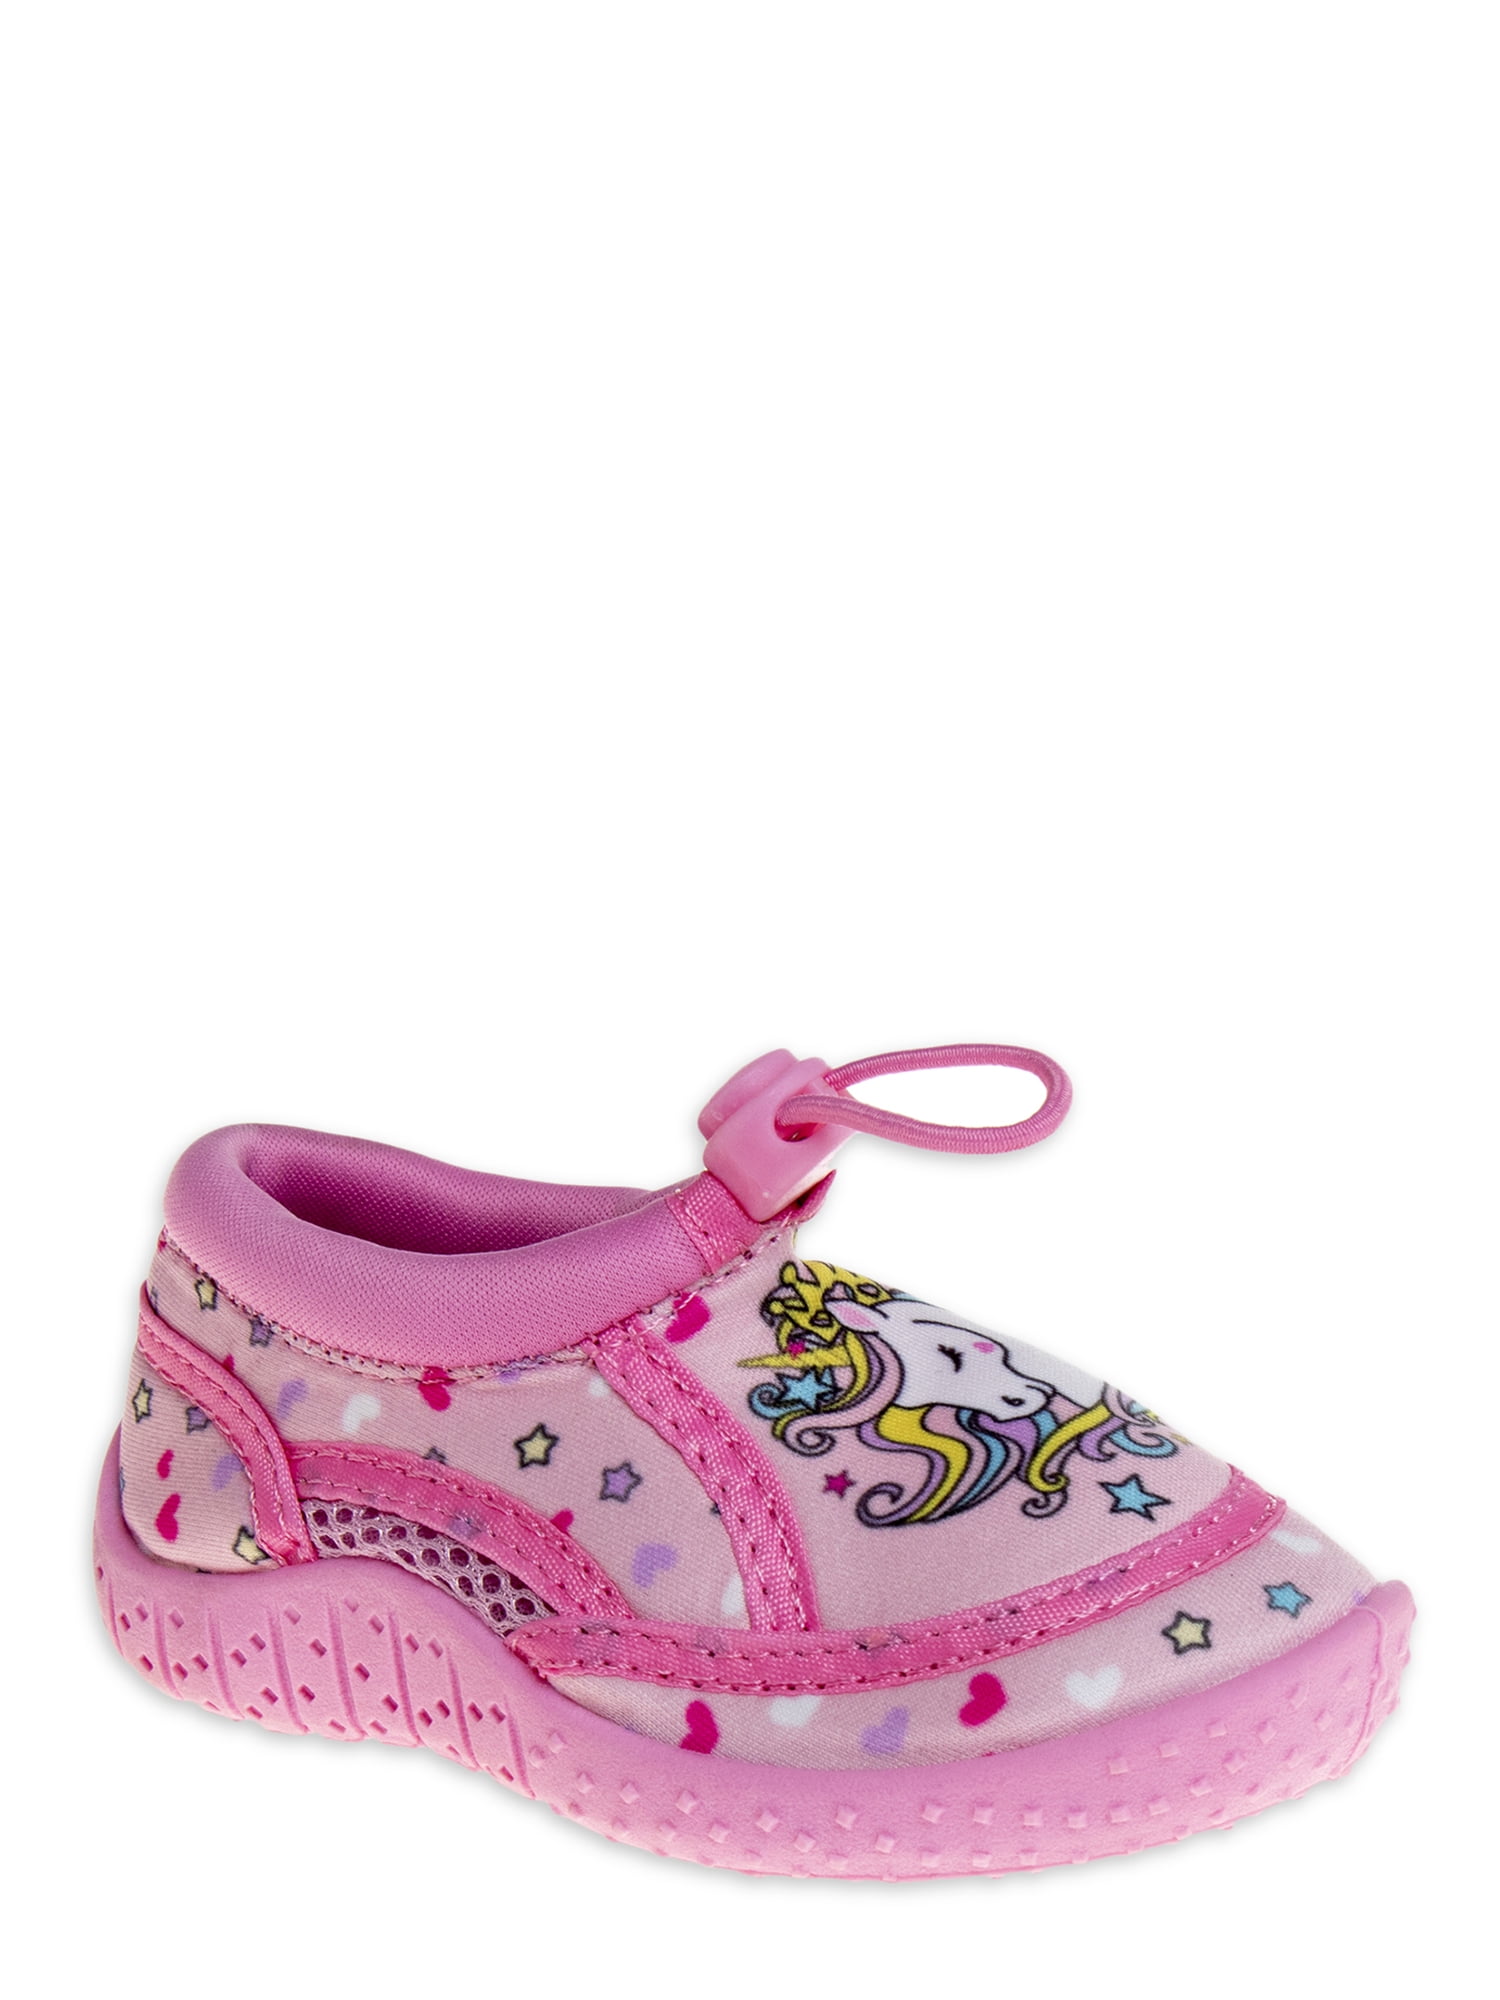 Frisky Shoes Little Girls Toddler Tie Dye Aqua Shoes 